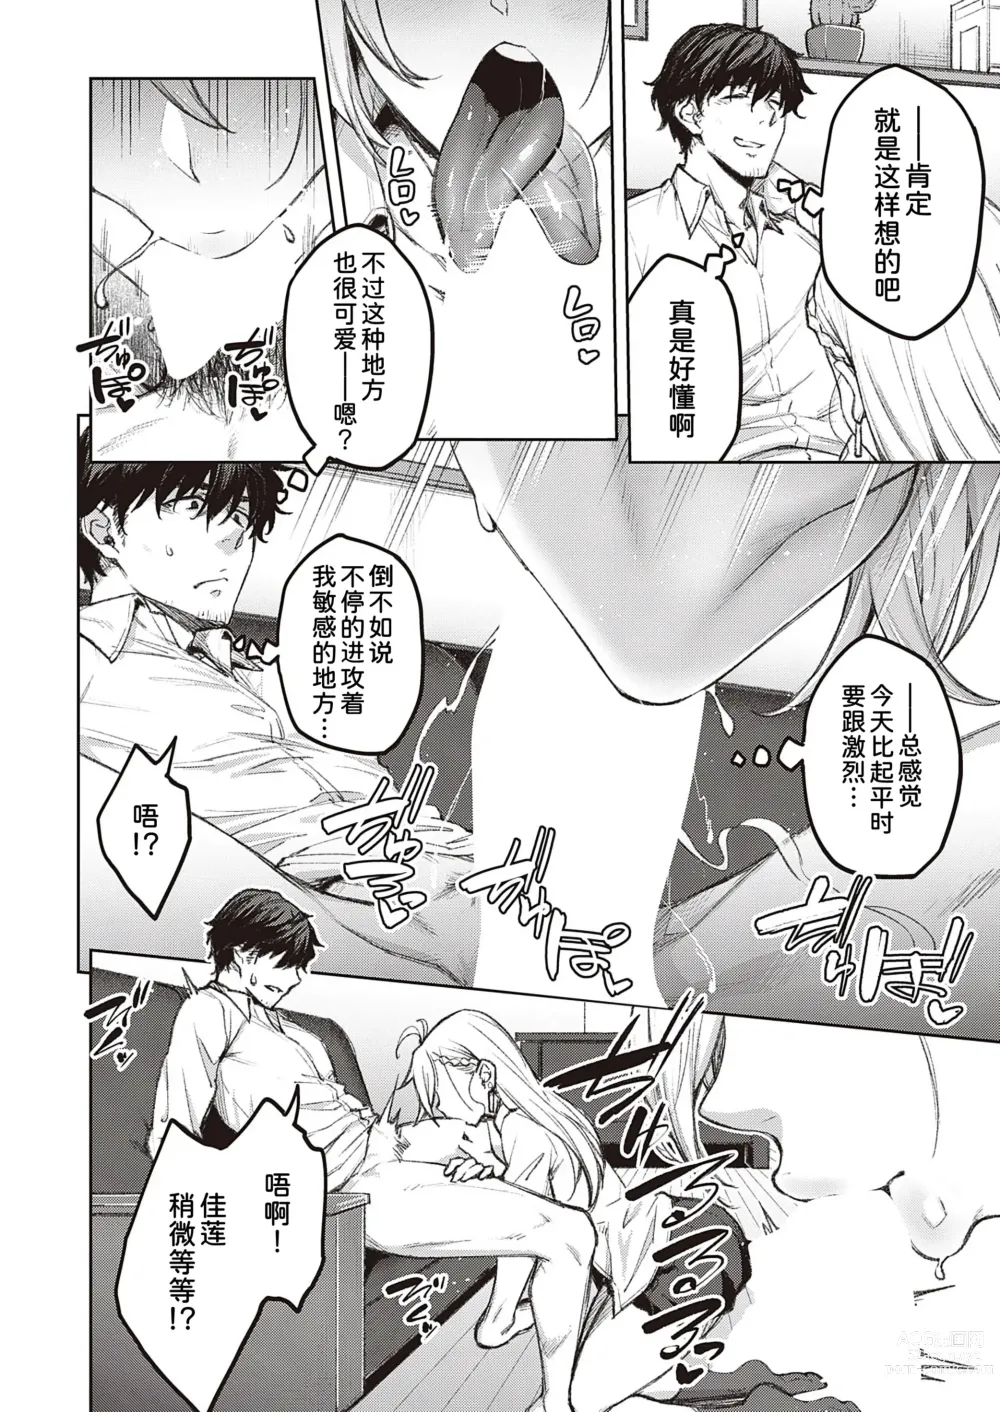 Page 15 of manga Tsugi wa Kou wa Ikanai karana!